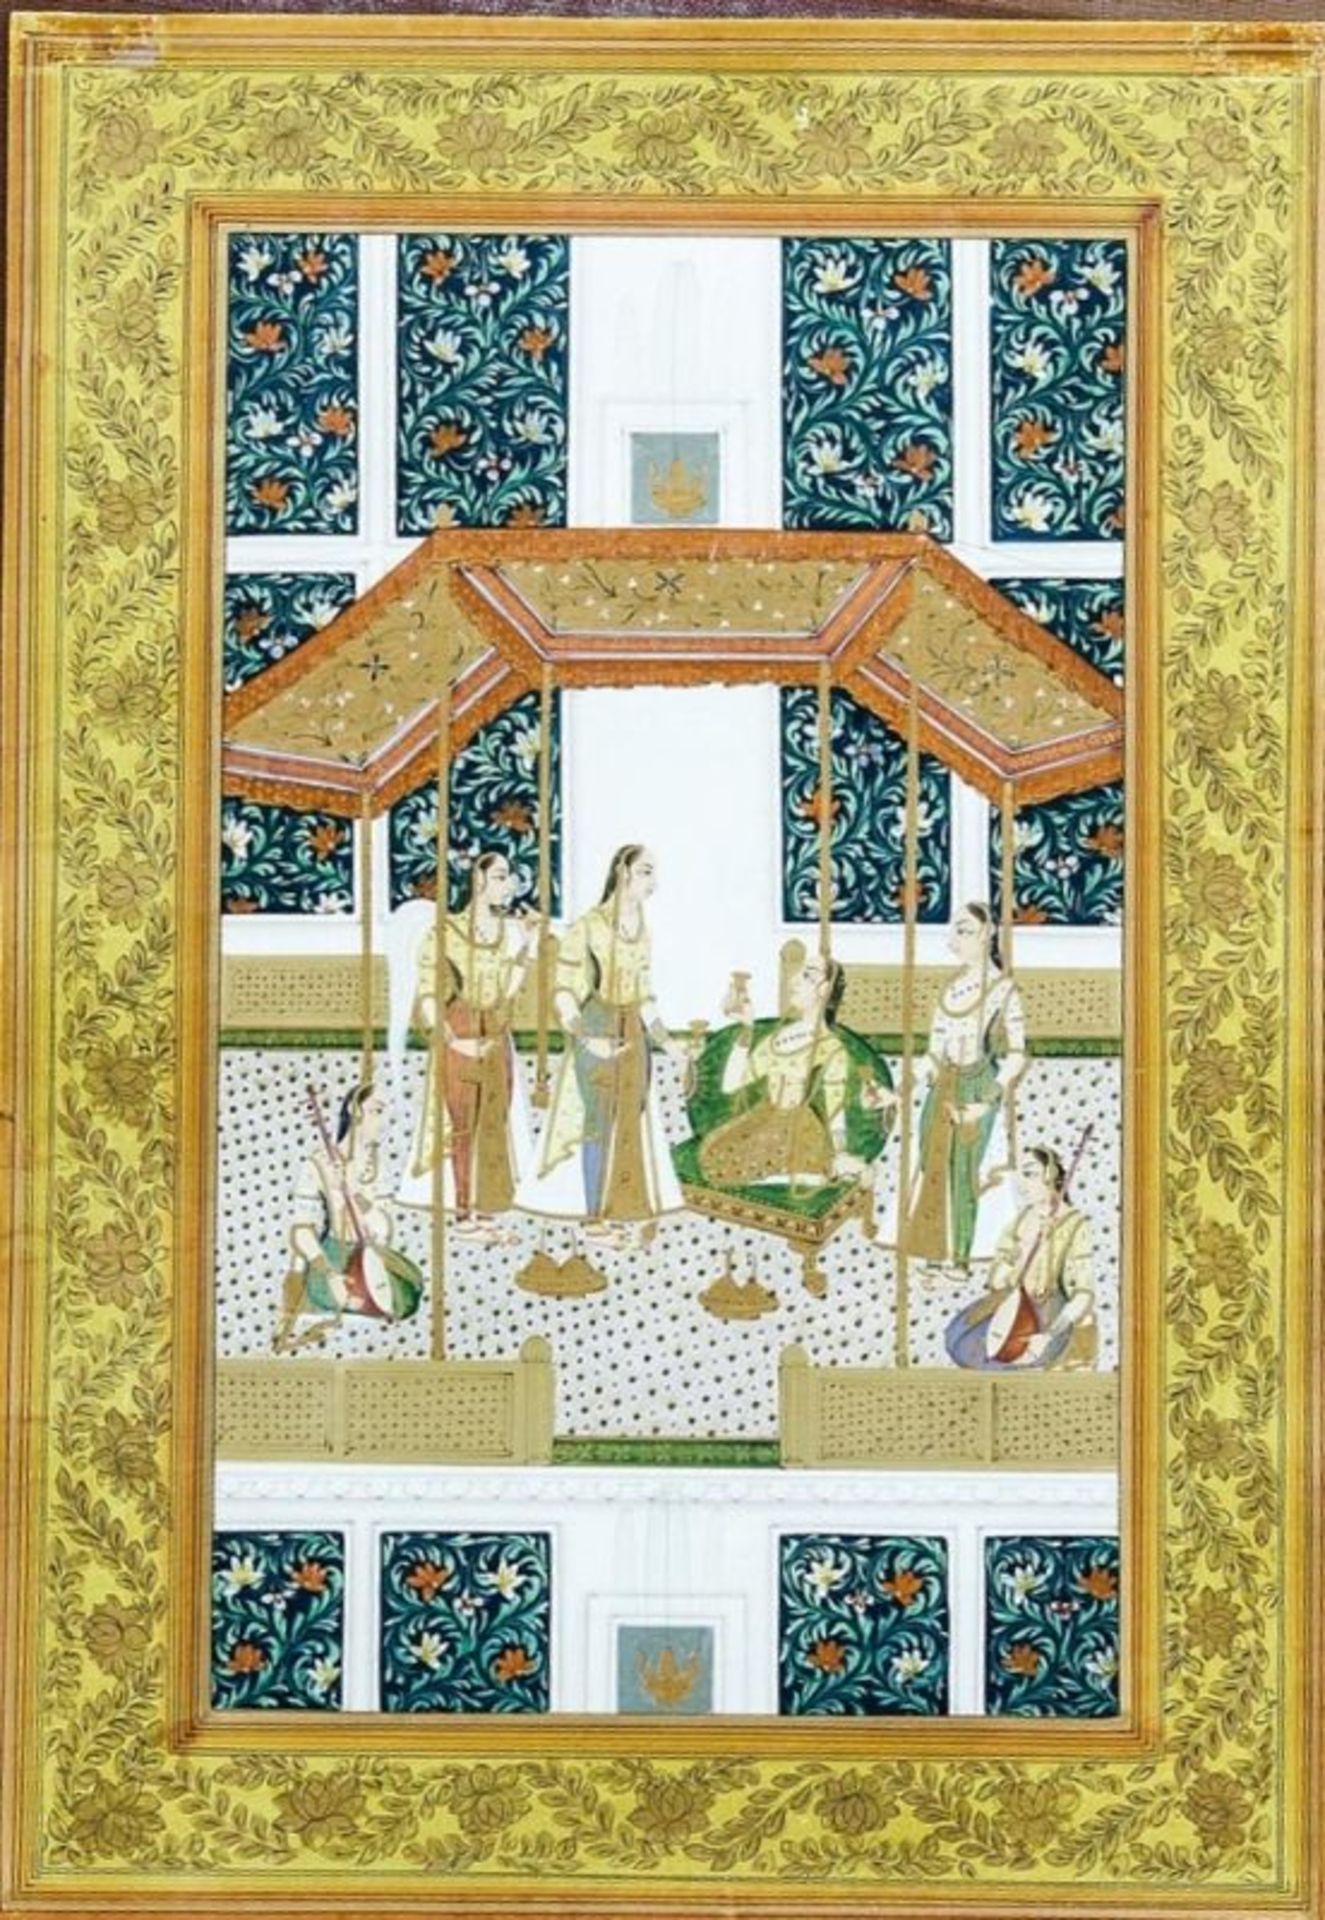 Prinzessin in ihrem Gemach, Indische Miniaturmalerei, wohl des 19. Jh.